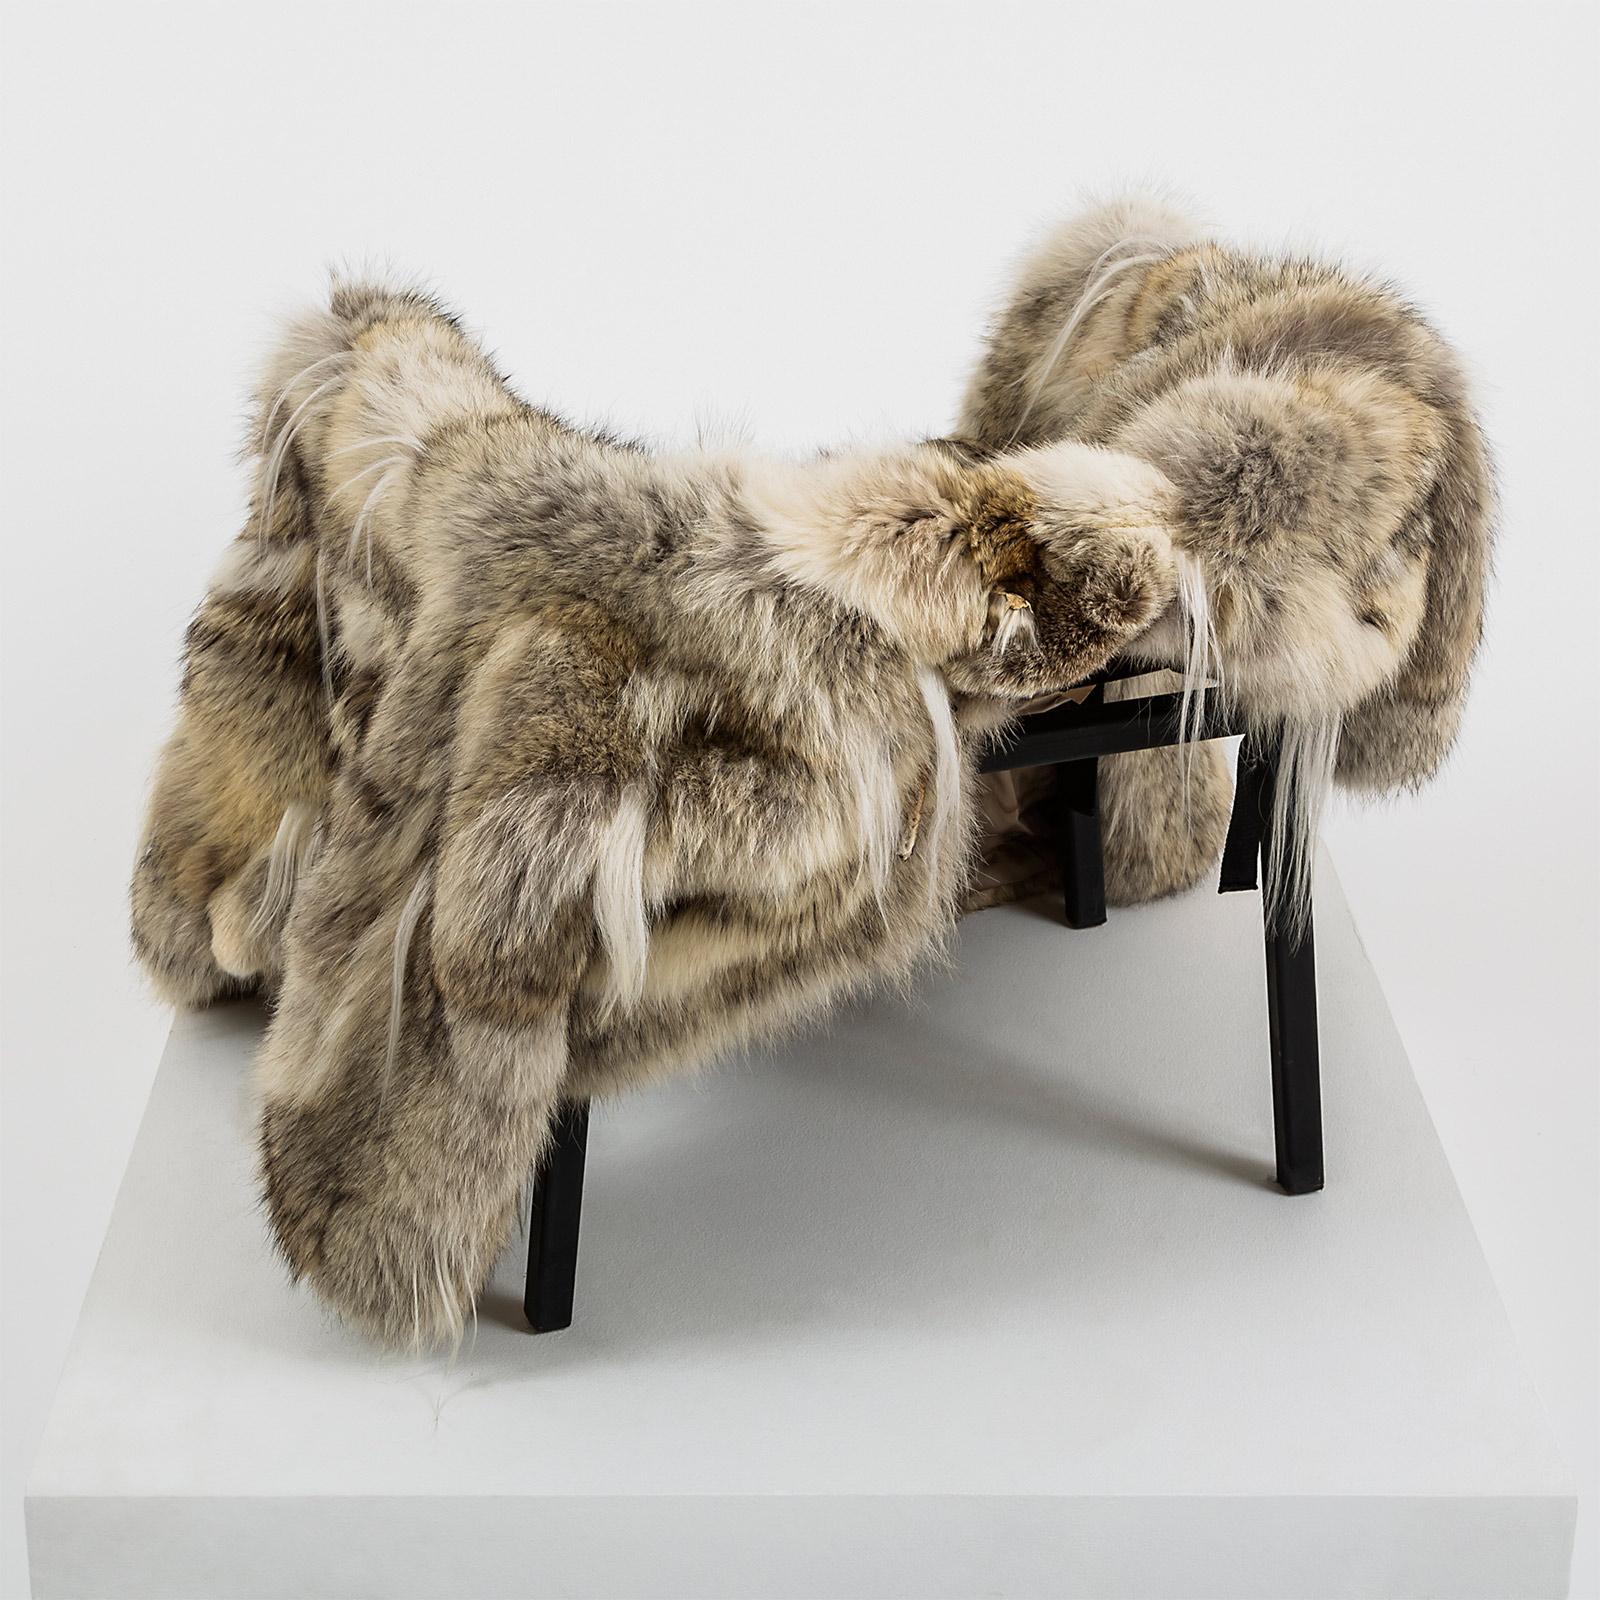 Ein schwarzer Stahlrahmen für einen Stuhl. Ein Pelzmantel (Wolf, Ziege) in Größe M/ L. Der Mantel ist mit Riemen versehen, die ihn in einen Sitz verwandeln, wodurch der Stuhl funktionell und vollständig wird.

Materialien: Stahlgestell und